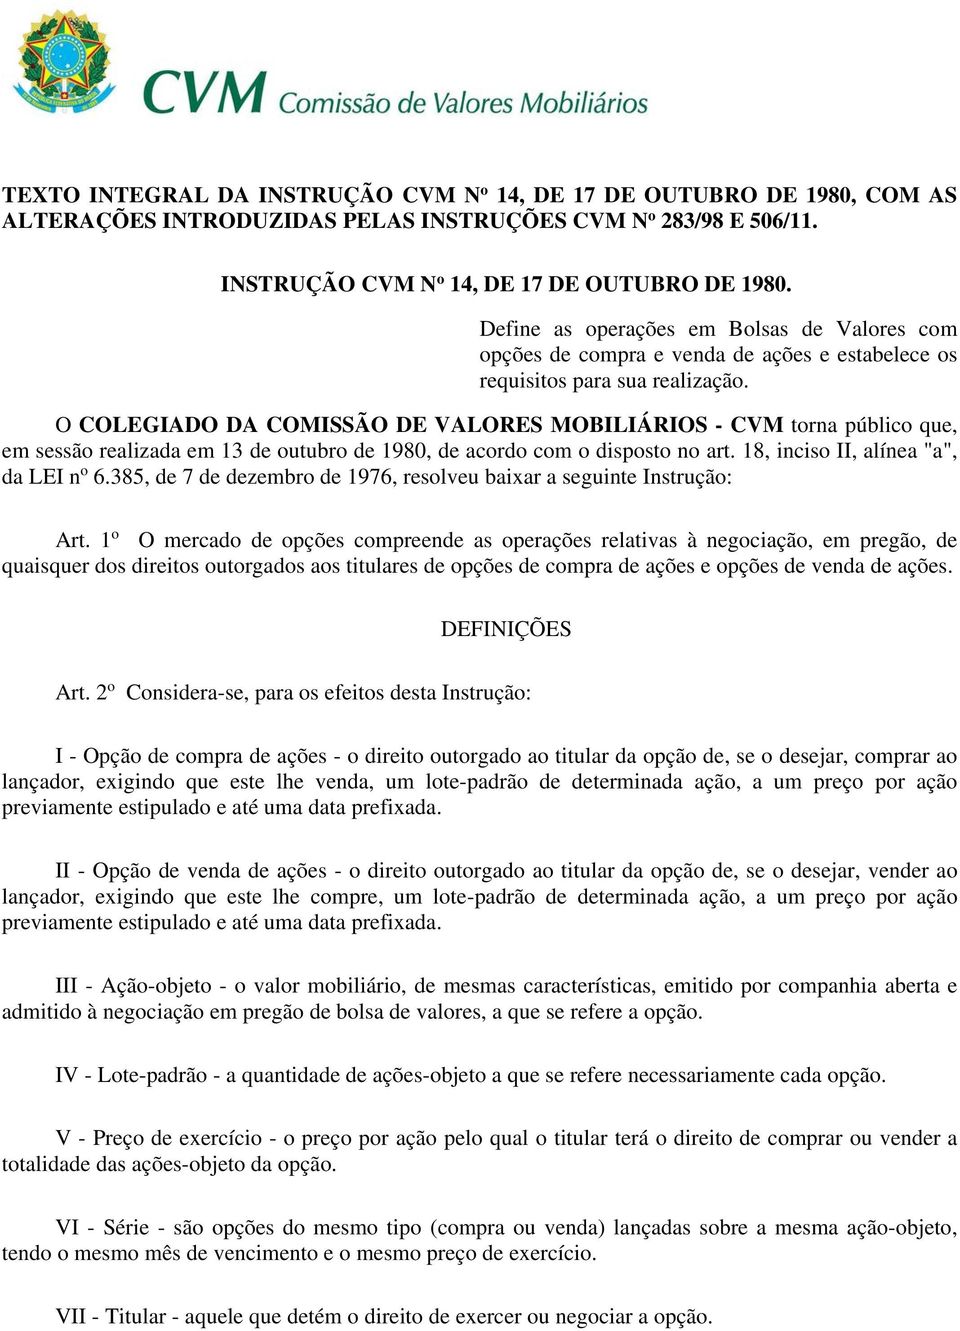 O COLEGIADO DA COMISSÃO DE VALORES MOBILIÁRIOS - CVM torna público que, em sessão realizada em 13 de outubro de 1980, de acordo com o disposto no art. 18, inciso II, alínea "a", da LEI n o 6.